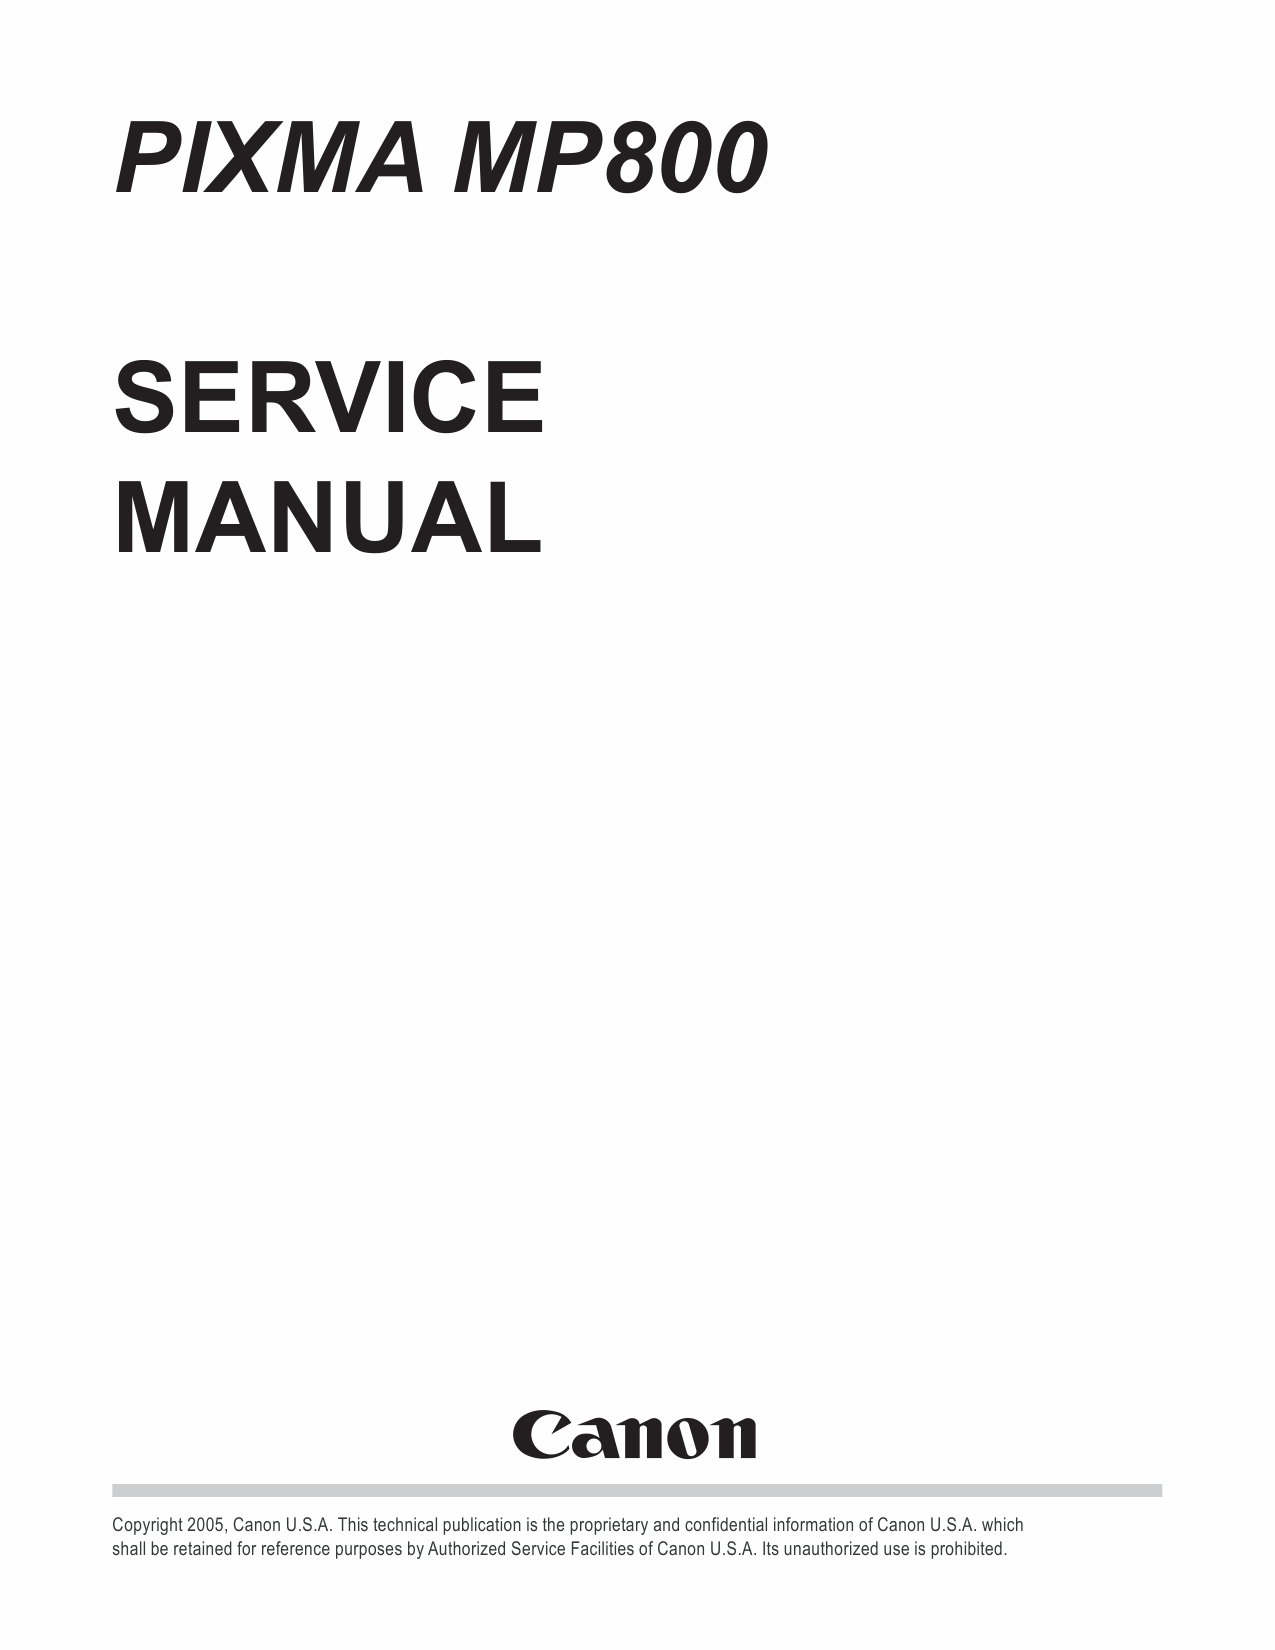 Canon PIXMA MP800 Service Manual-1